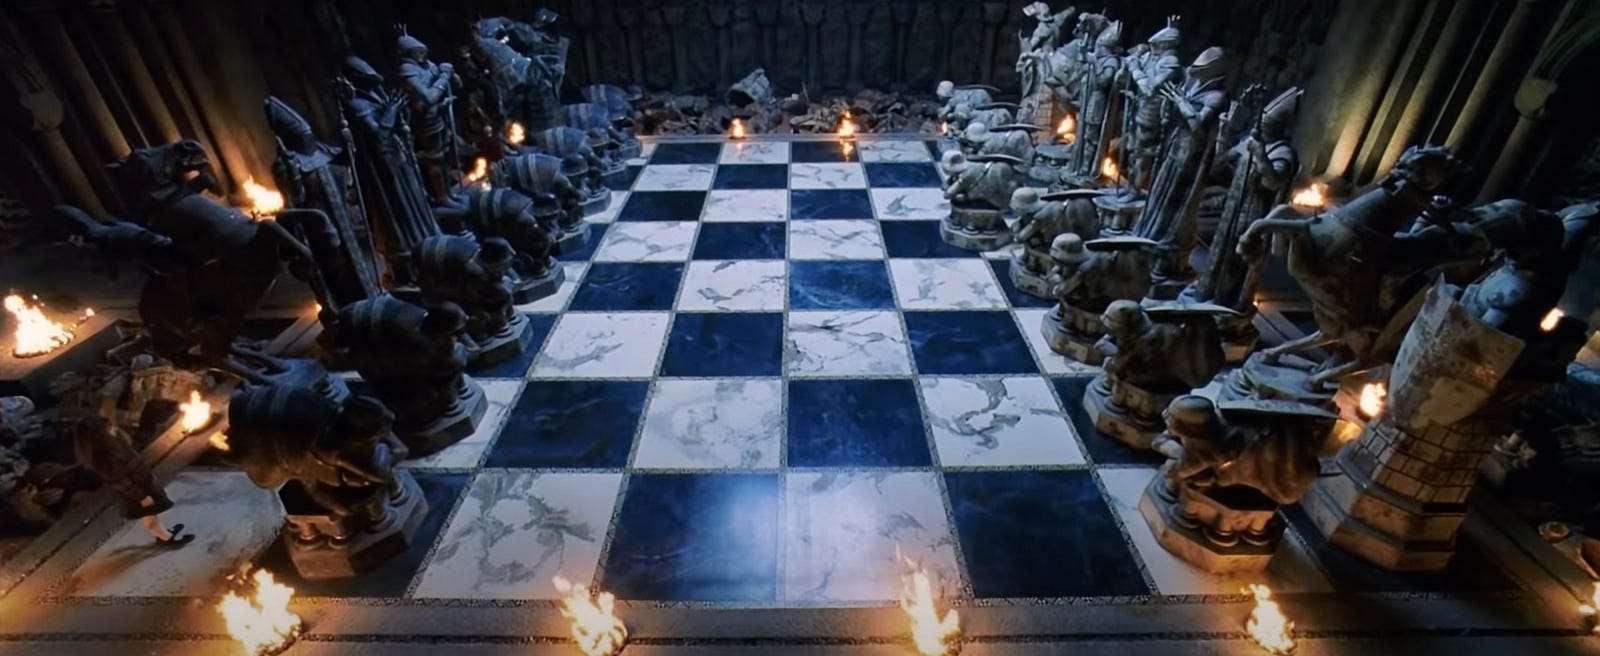 Top Ten Chess Scenes in Movies